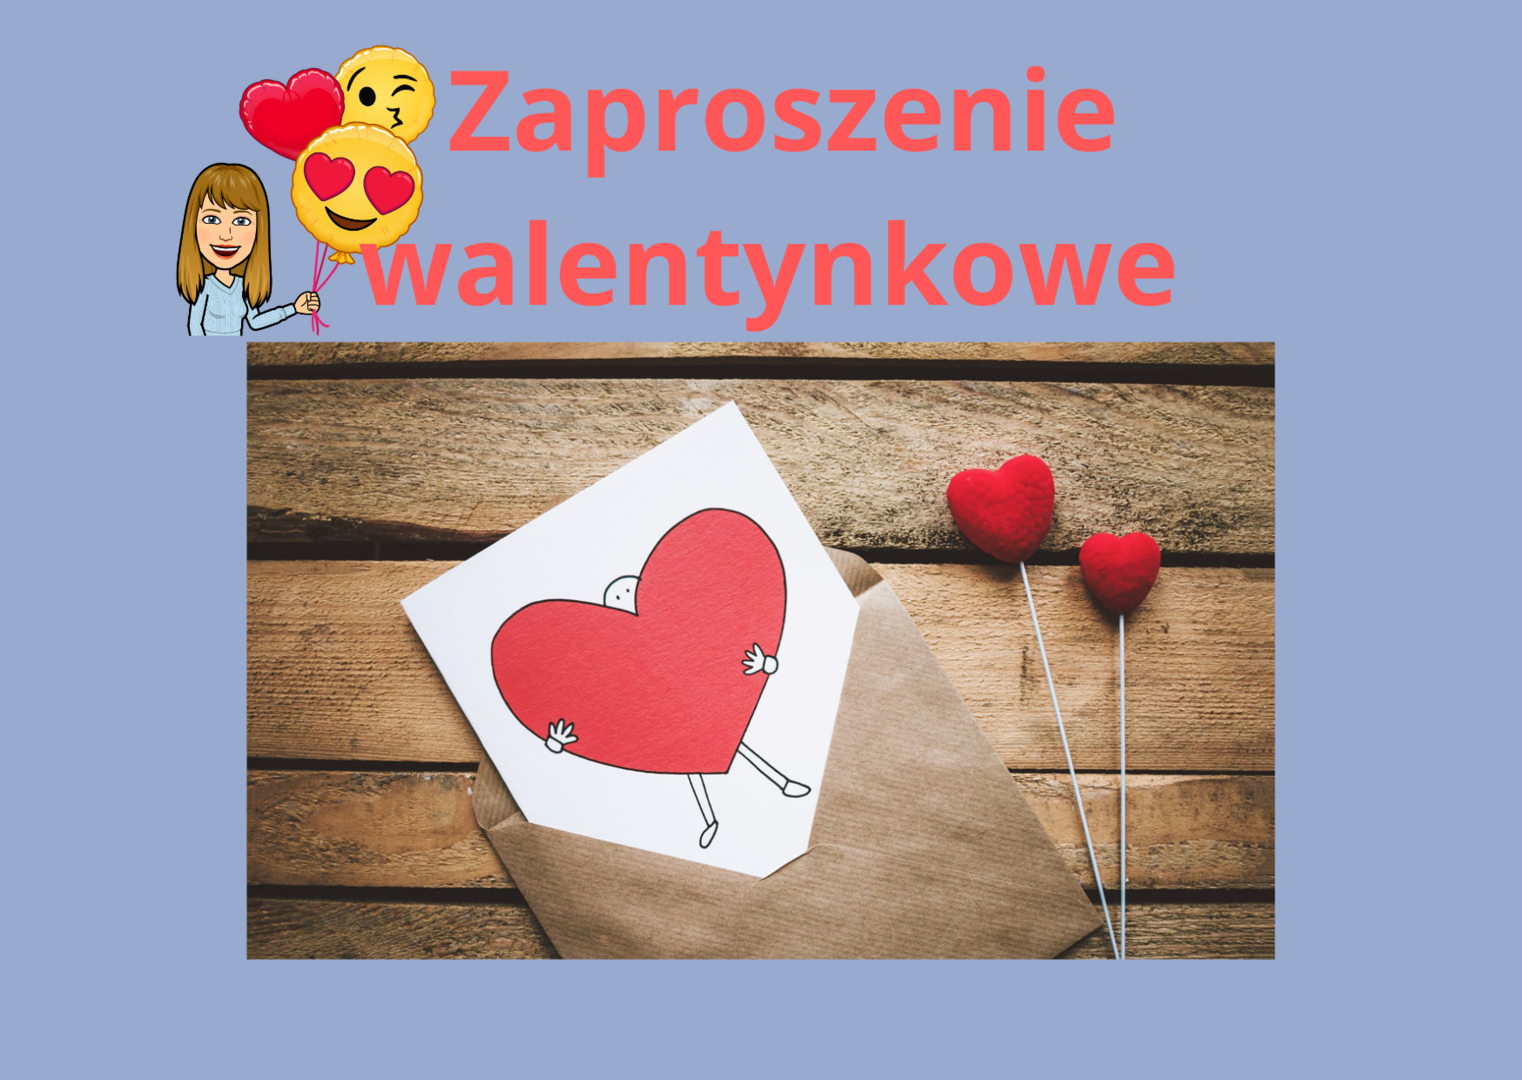 Walentynkowe zaproszenie - plakat.png